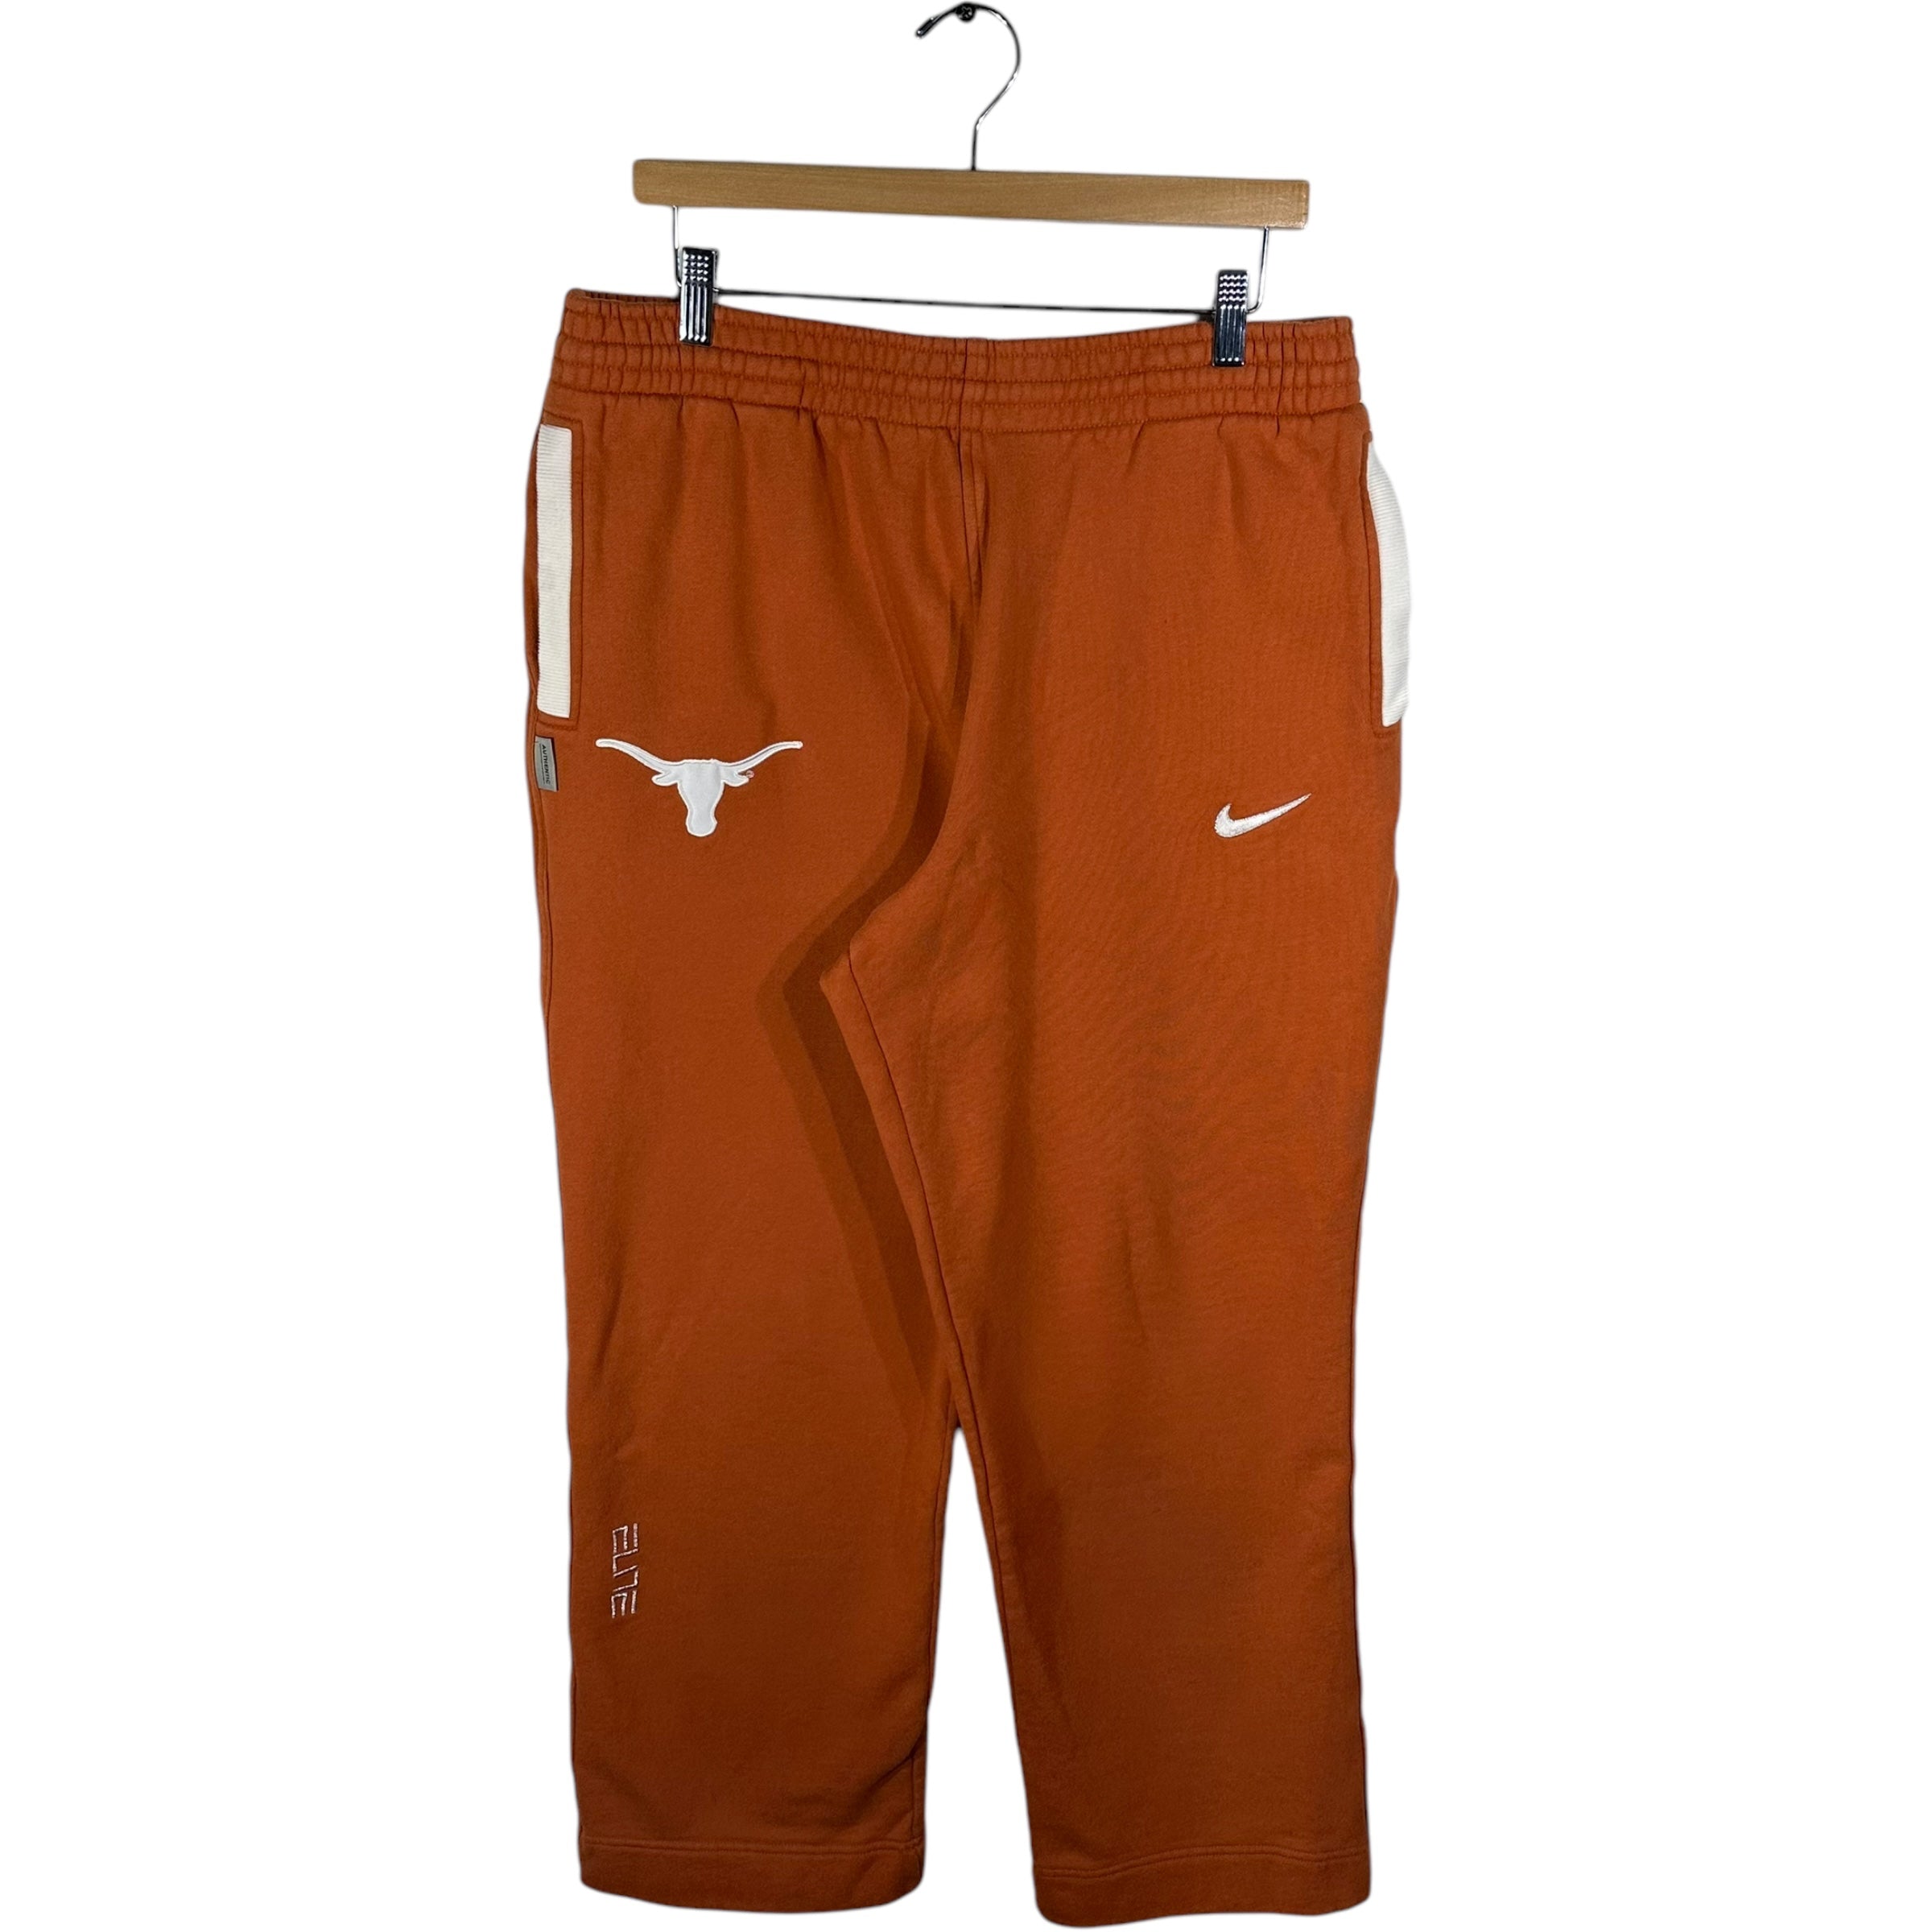 Vintage Nike Texas Longhorns Sweatpants